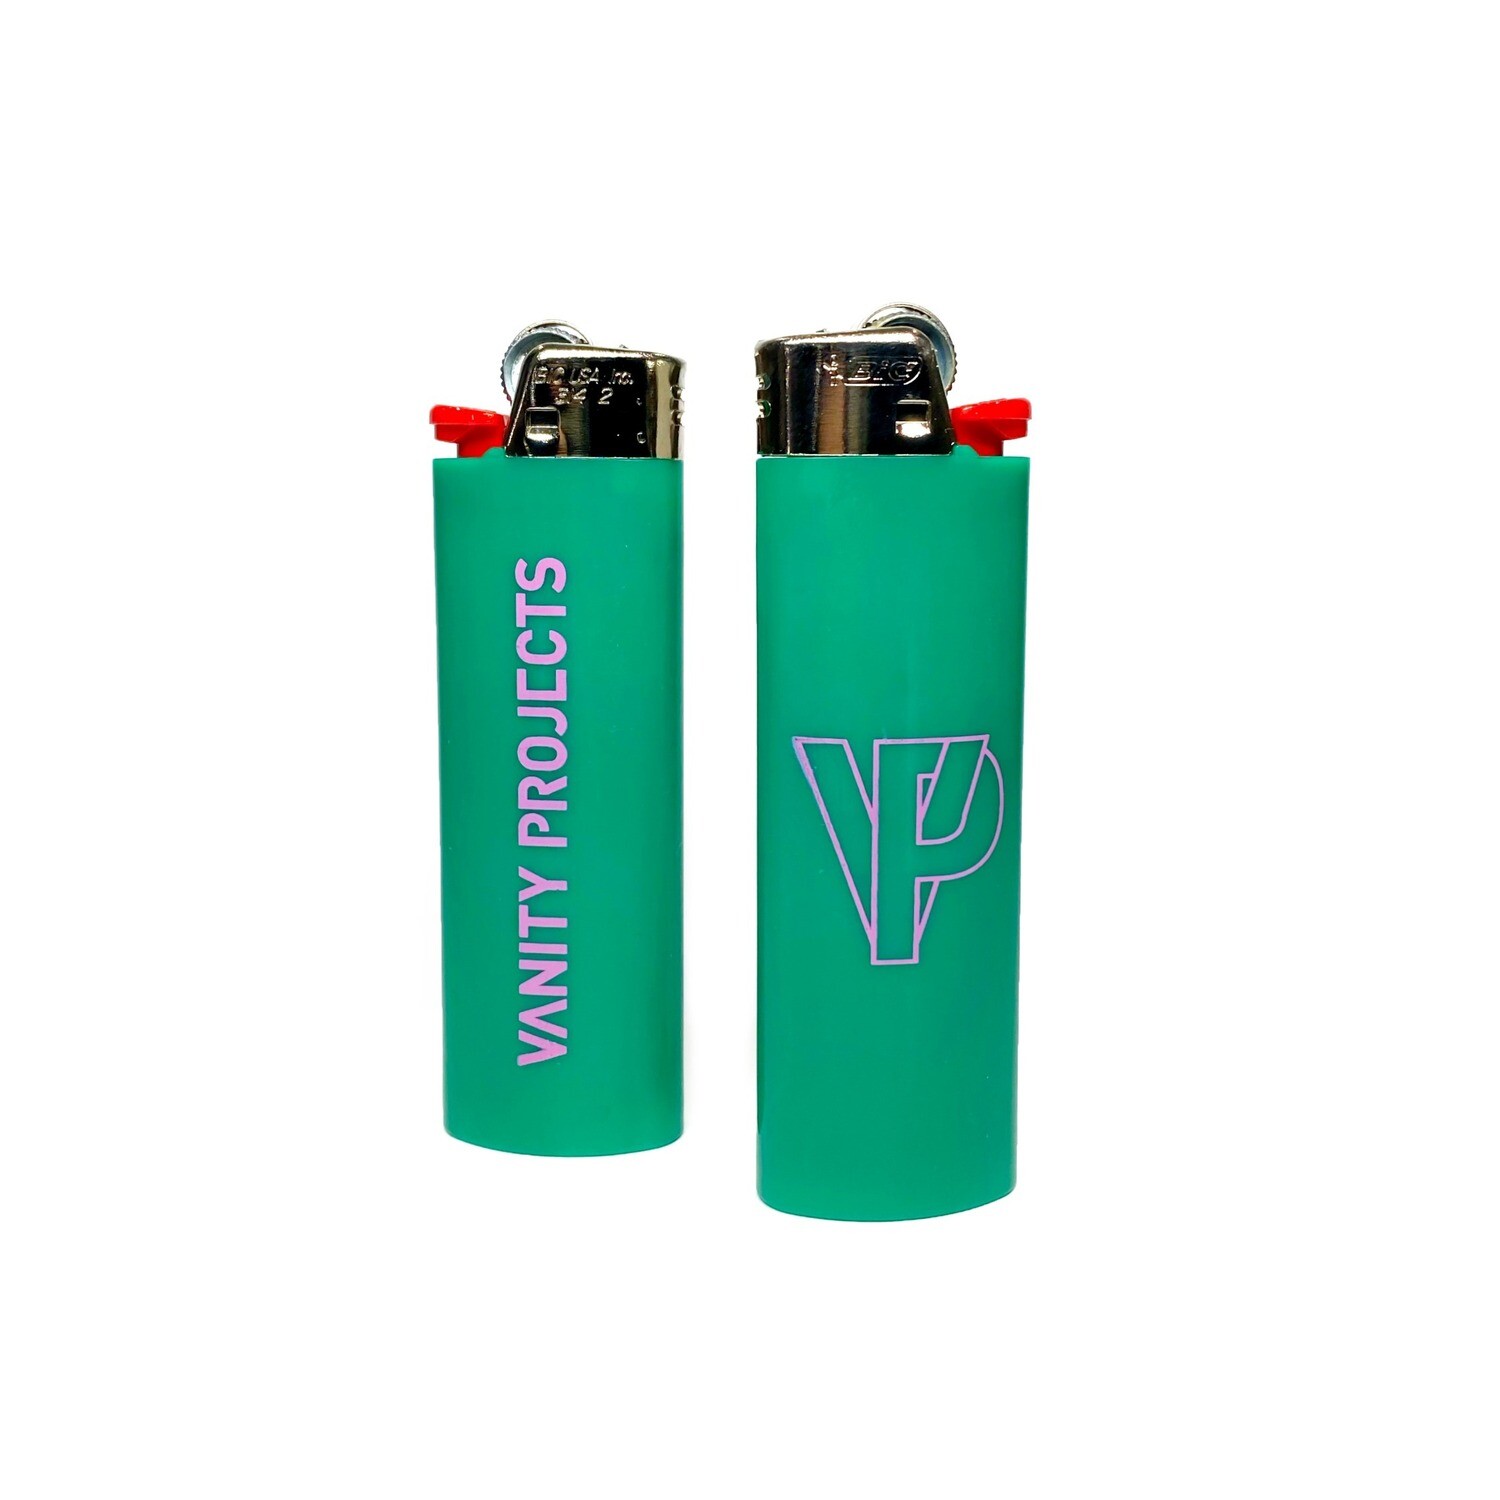 VP Lighter (Green)